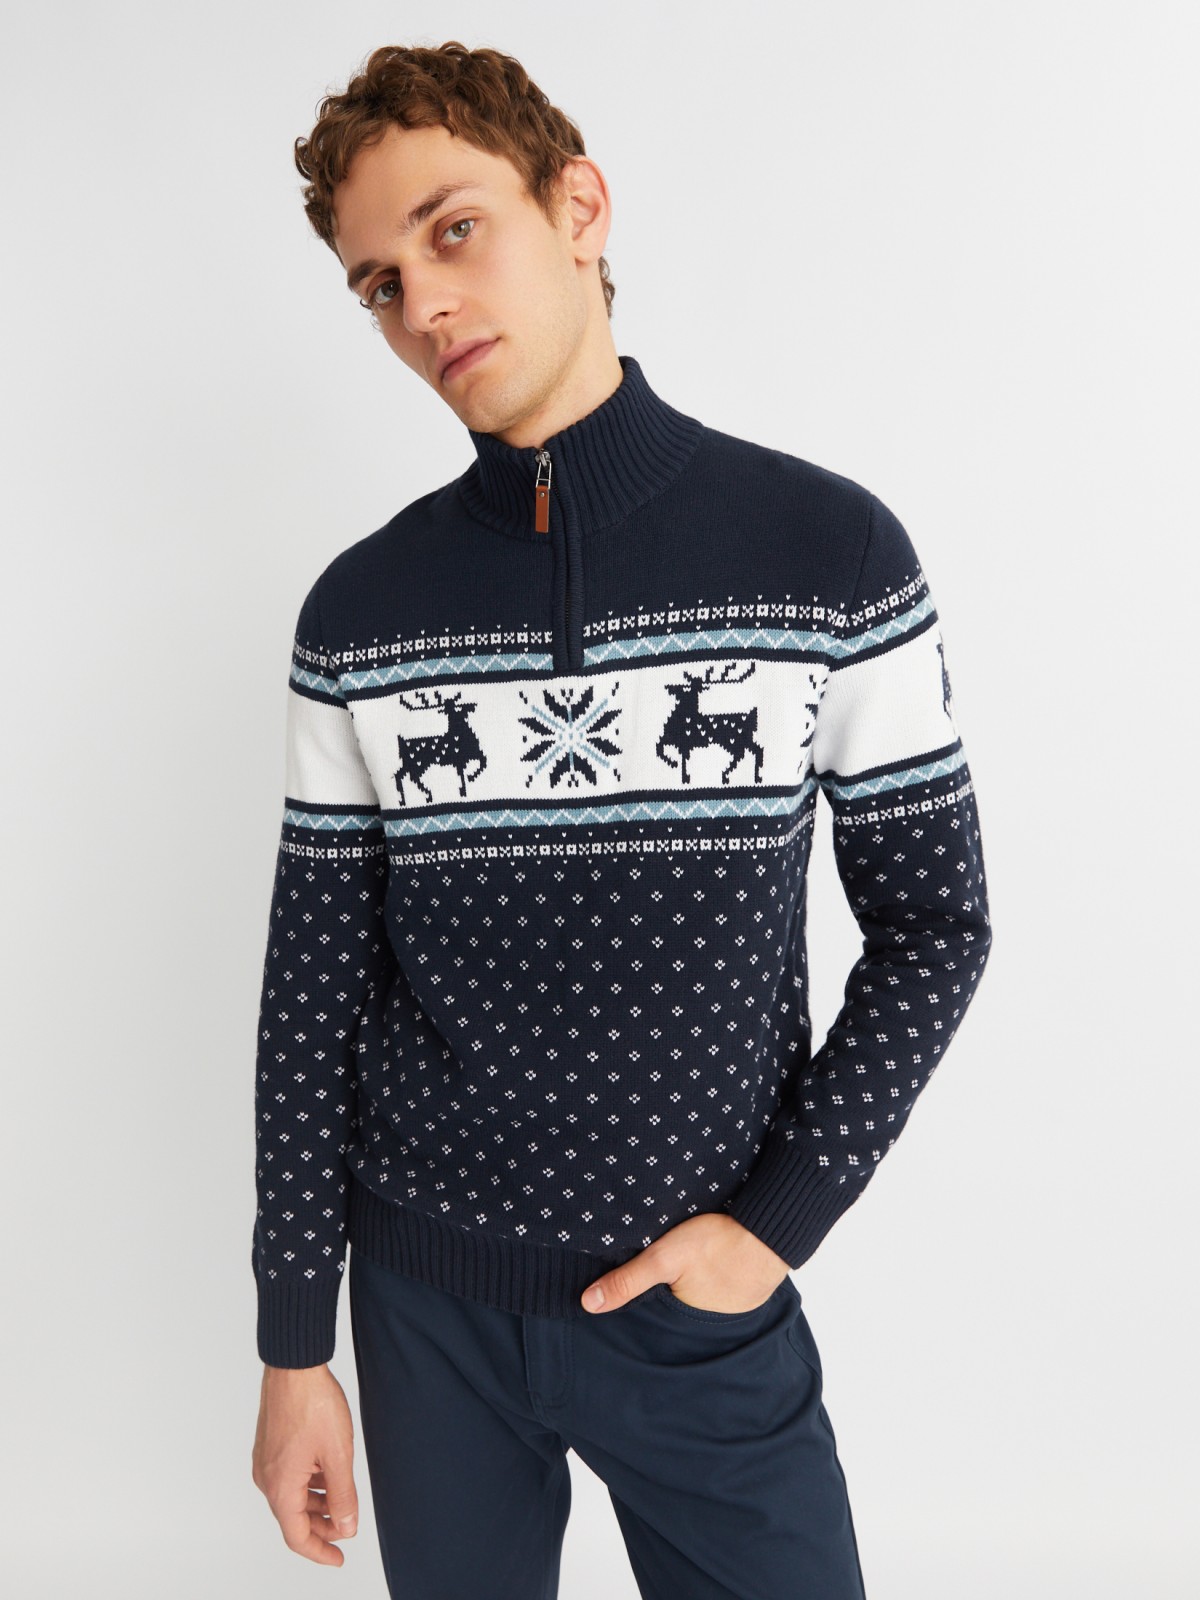 Вязаный свитер с воротником на молнии и скандинавским узором zolla 013436823043, цвет синий, размер M